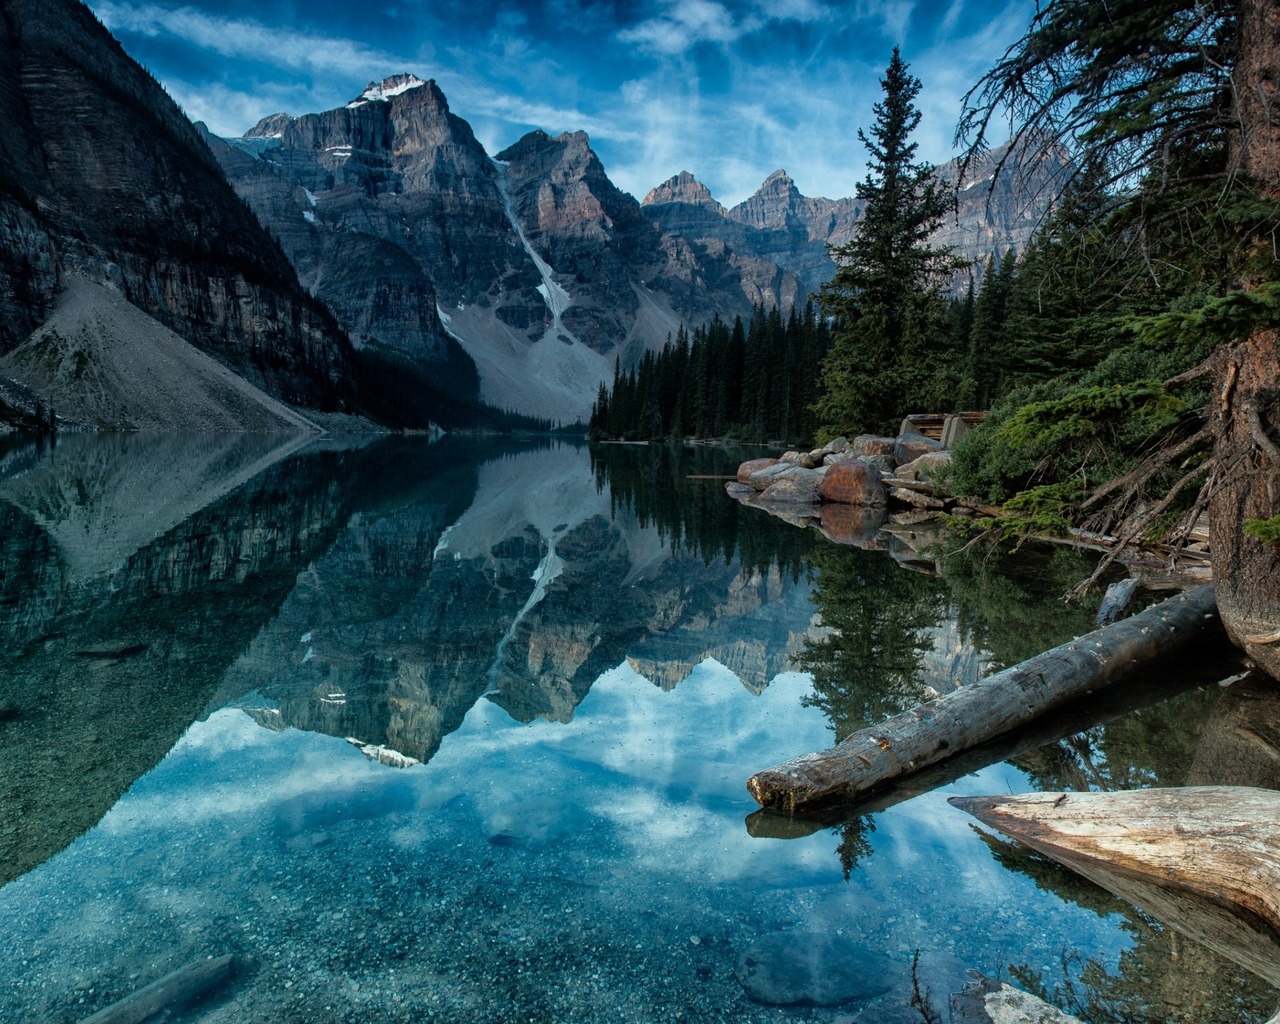 Moraine Lake Alberta Canada for 1280 x 1024 resolution